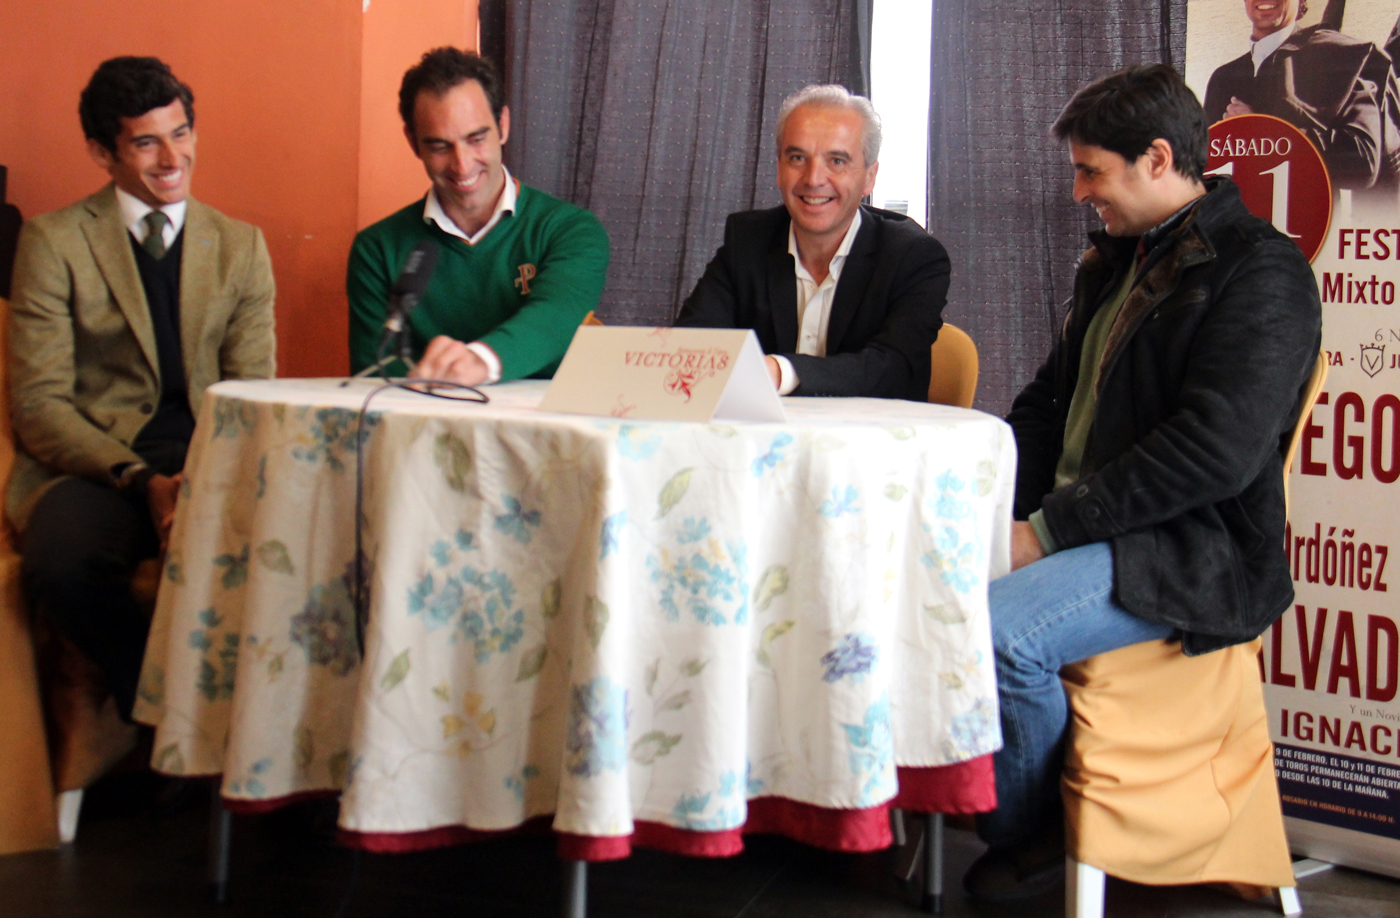 Ignacio Bonmatí,Salvador Cortés, Alfonso Carlos Moscoso y Paquirri en la presentación.